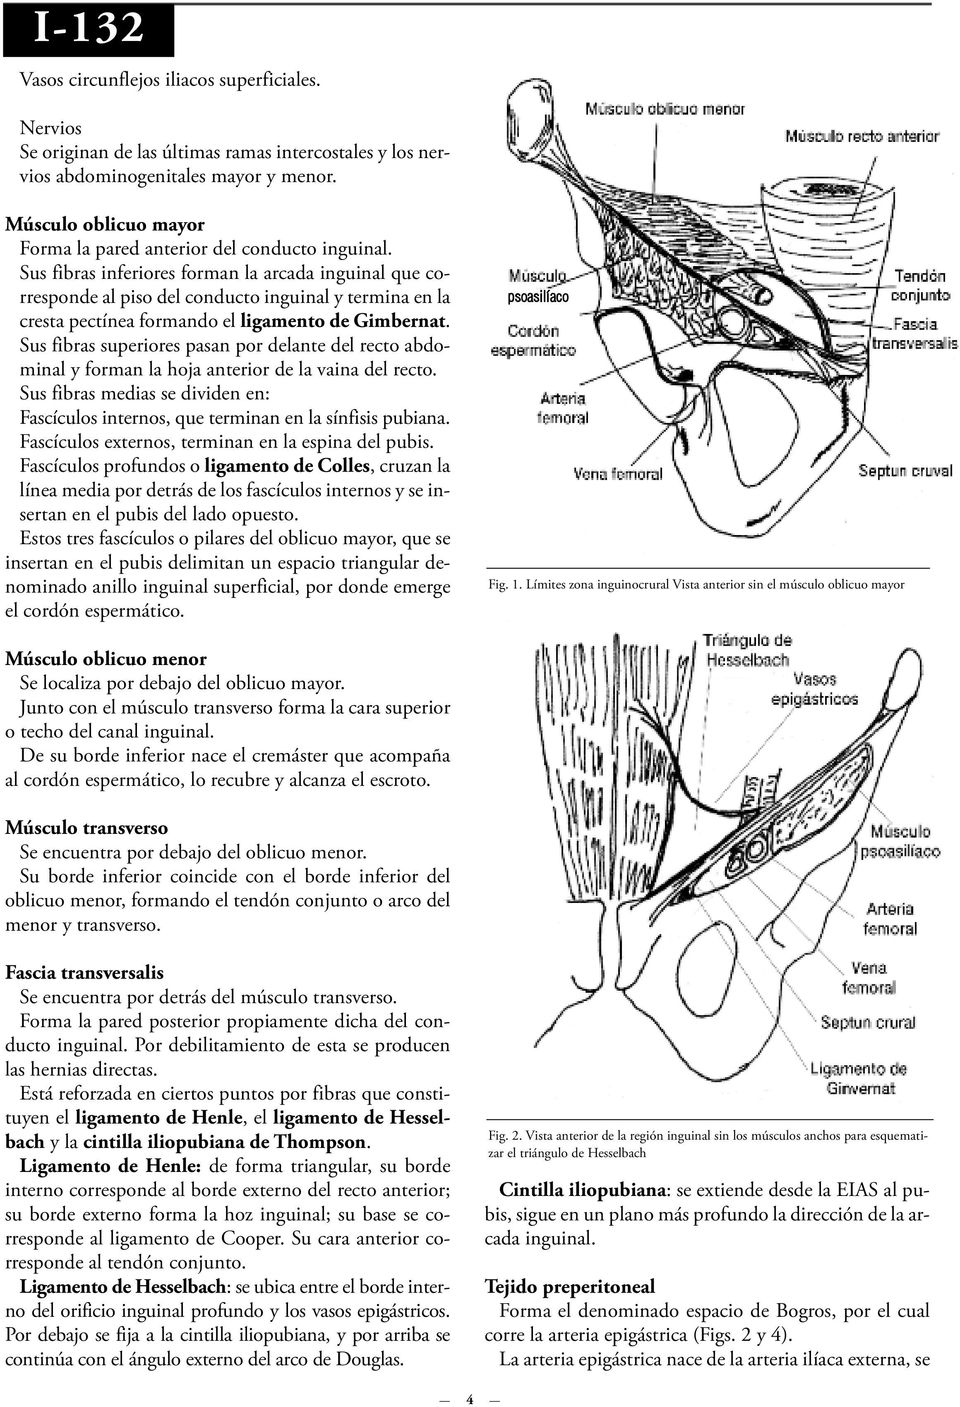 Sus fibras inferiores forman la arcada inguinal que corresponde al piso del conducto inguinal y termina en la cresta pectínea formando el ligamento de Gimbernat.